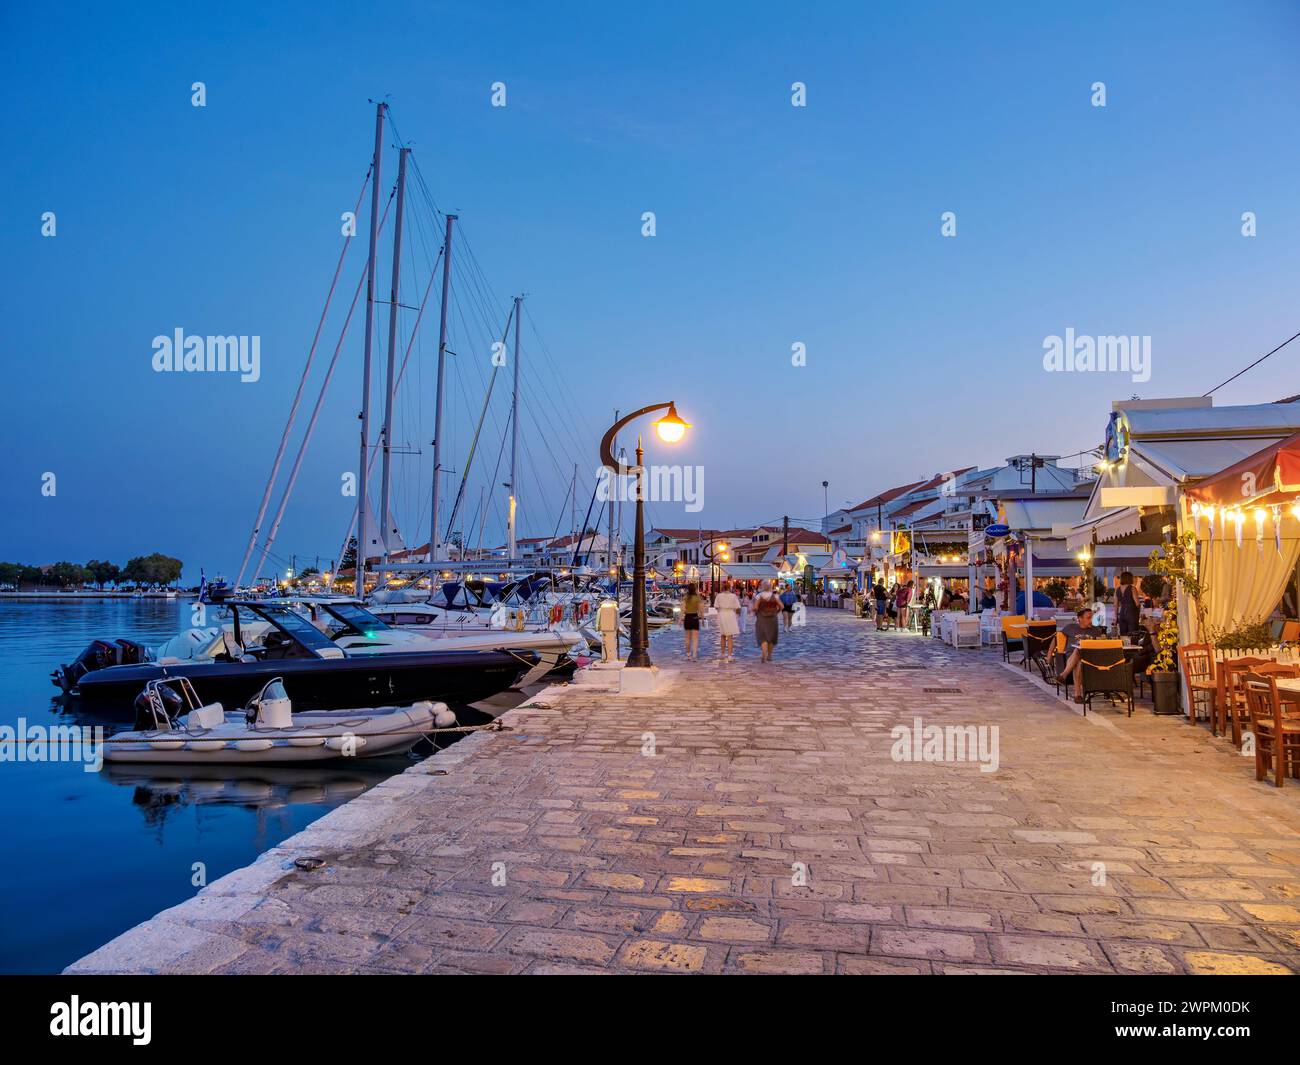 Ristoranti sul lungomare al crepuscolo, porto di Pitagoreio, isola di Samo, Egeo settentrionale, isole greche, Grecia, Europa Foto Stock